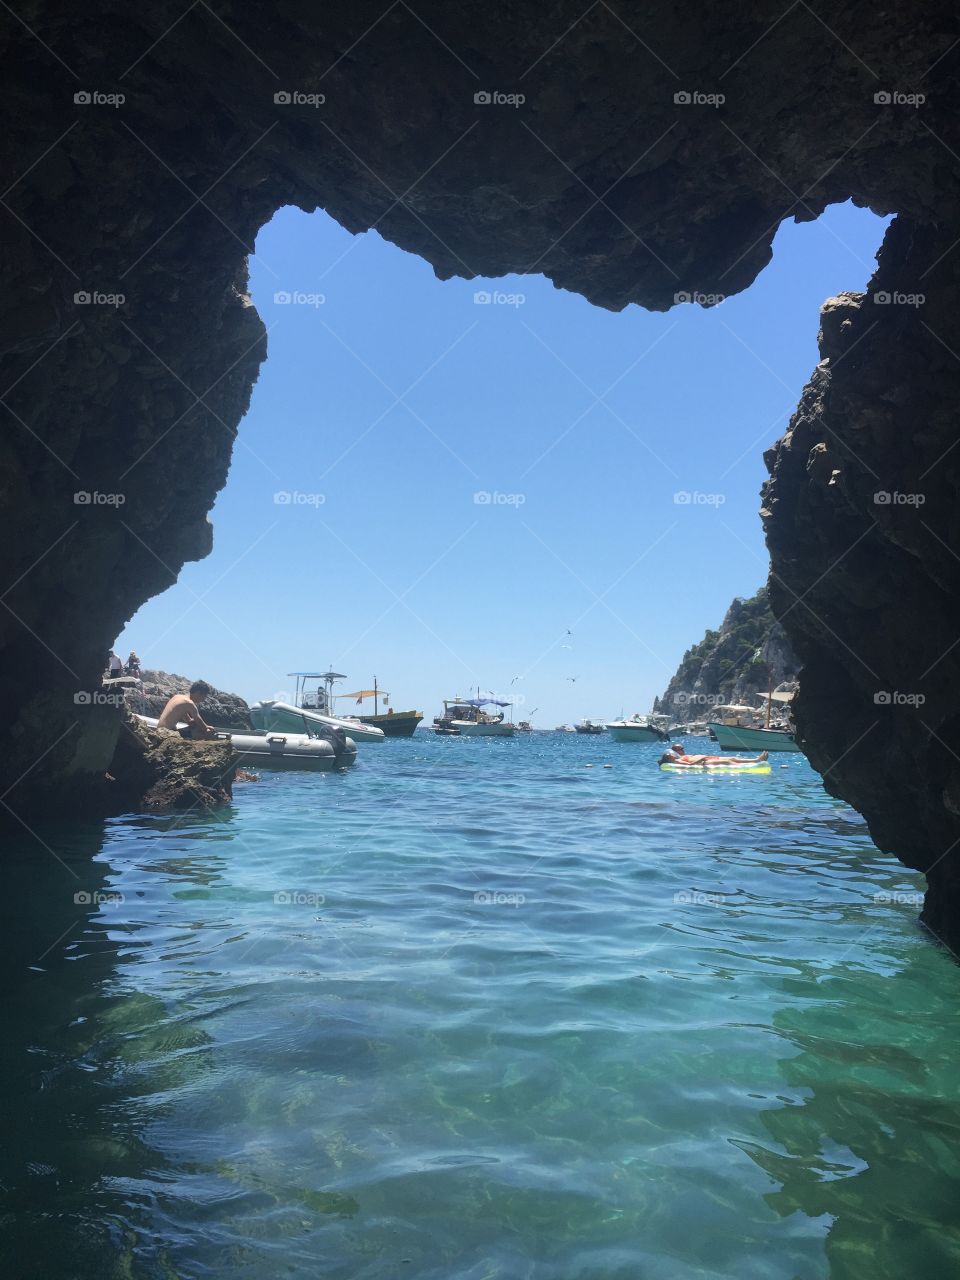 Capri, Italy. July 2016. 